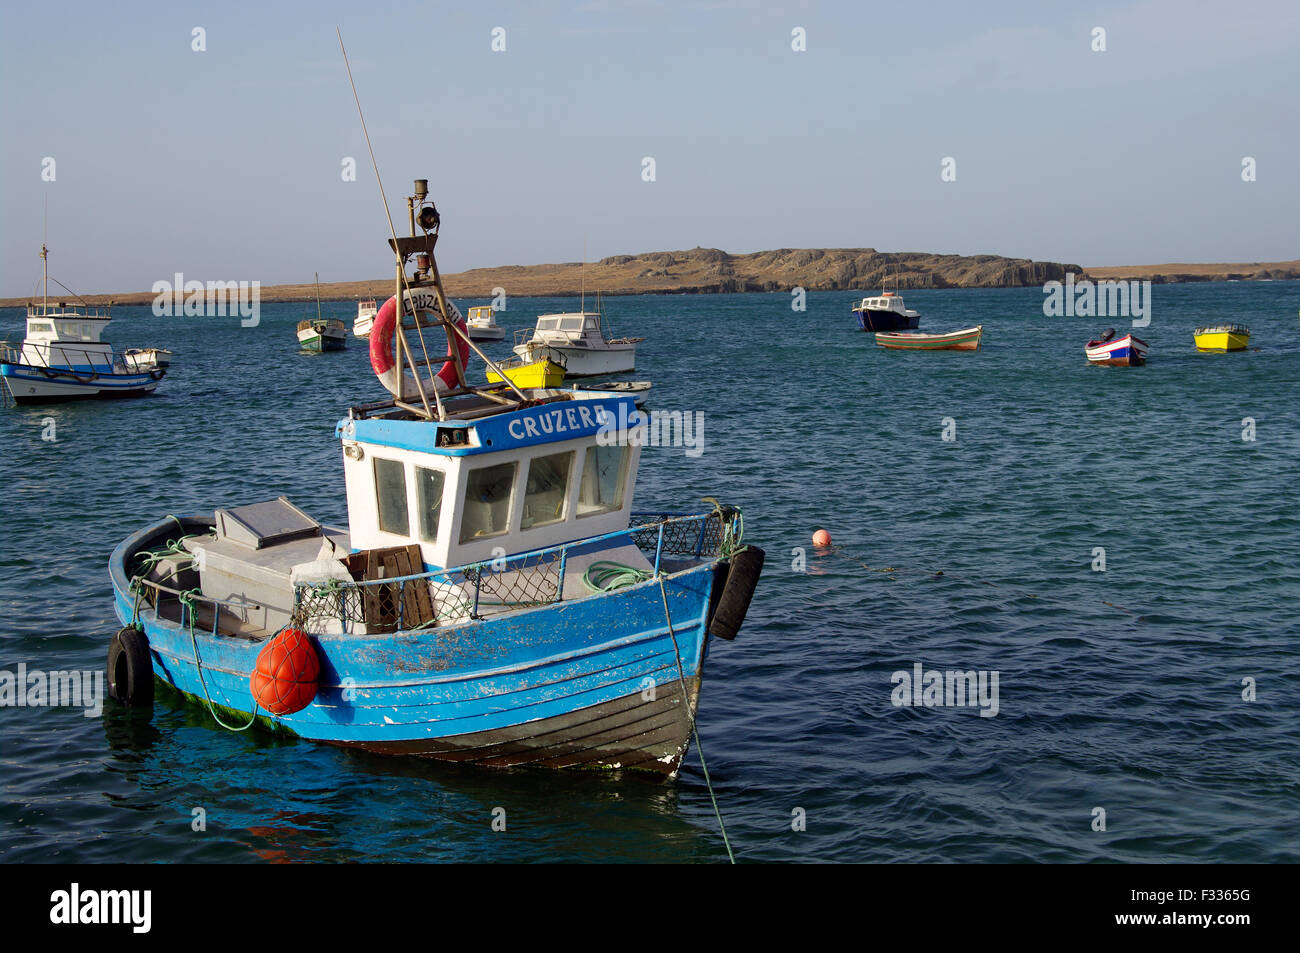 Rimorchiatore blu in un porto d'avena a Boa Vista sull'isola repubblica di Capo Verde Foto Stock